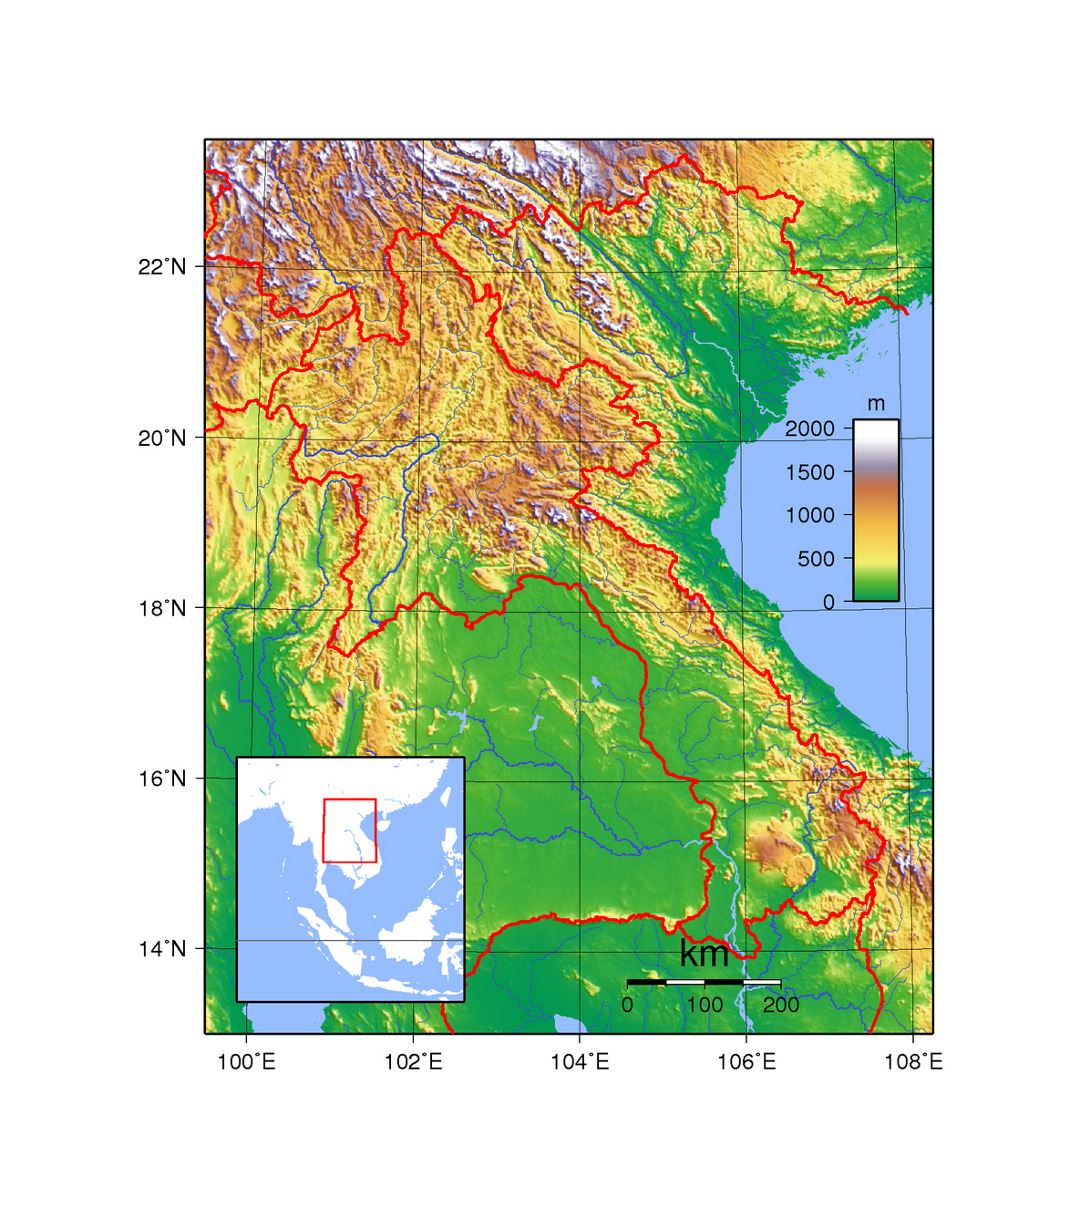 Detallado mapa topográfico de Laos